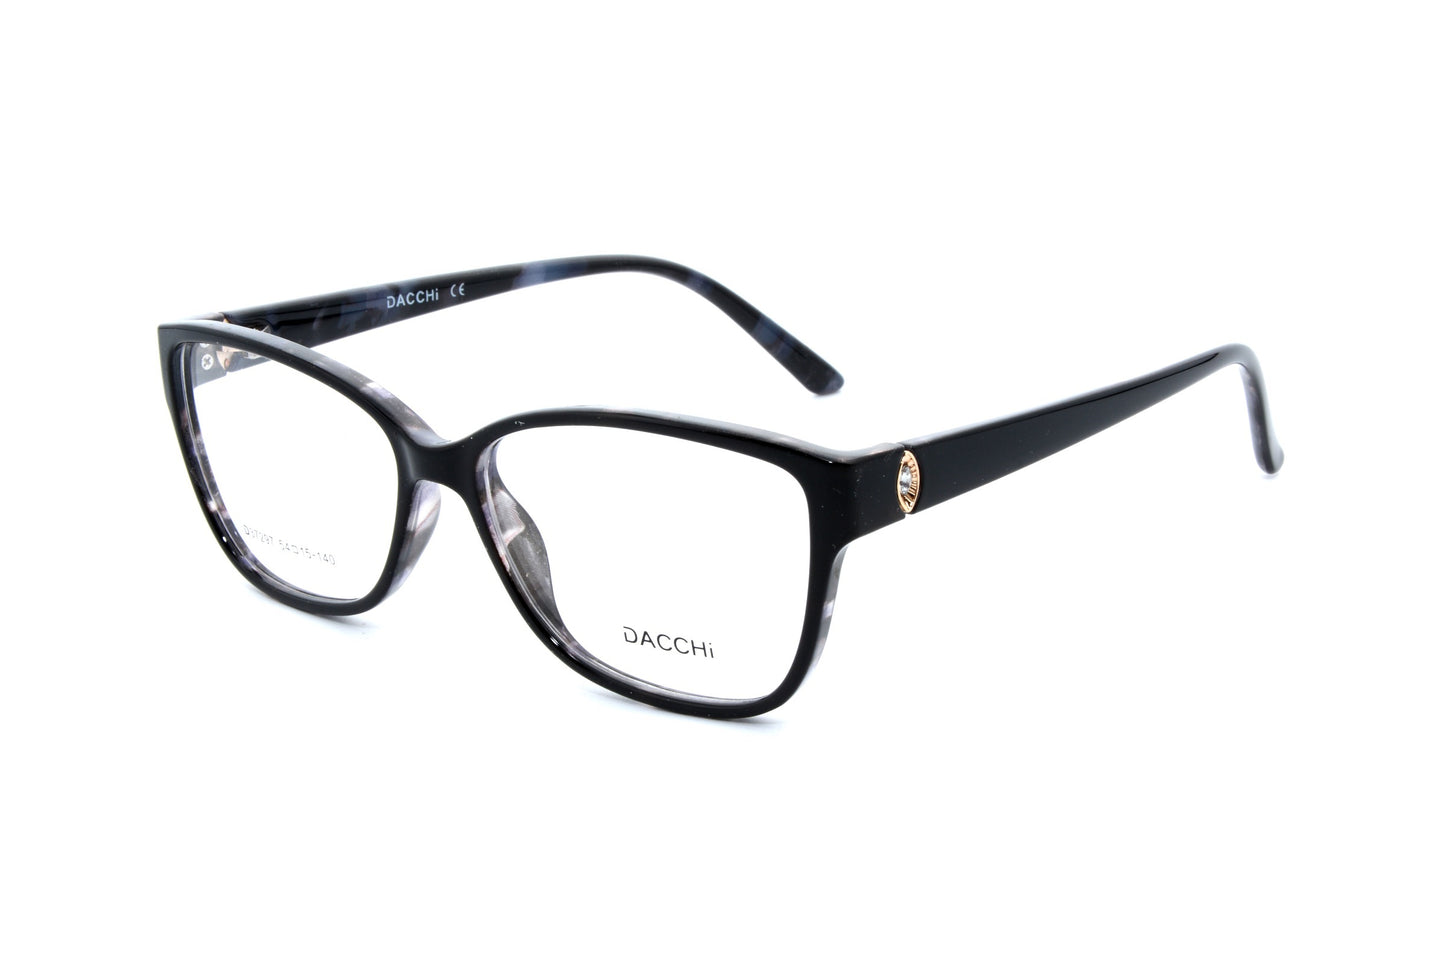 Dacchi eyewear 37297, C1 - Optics Trading